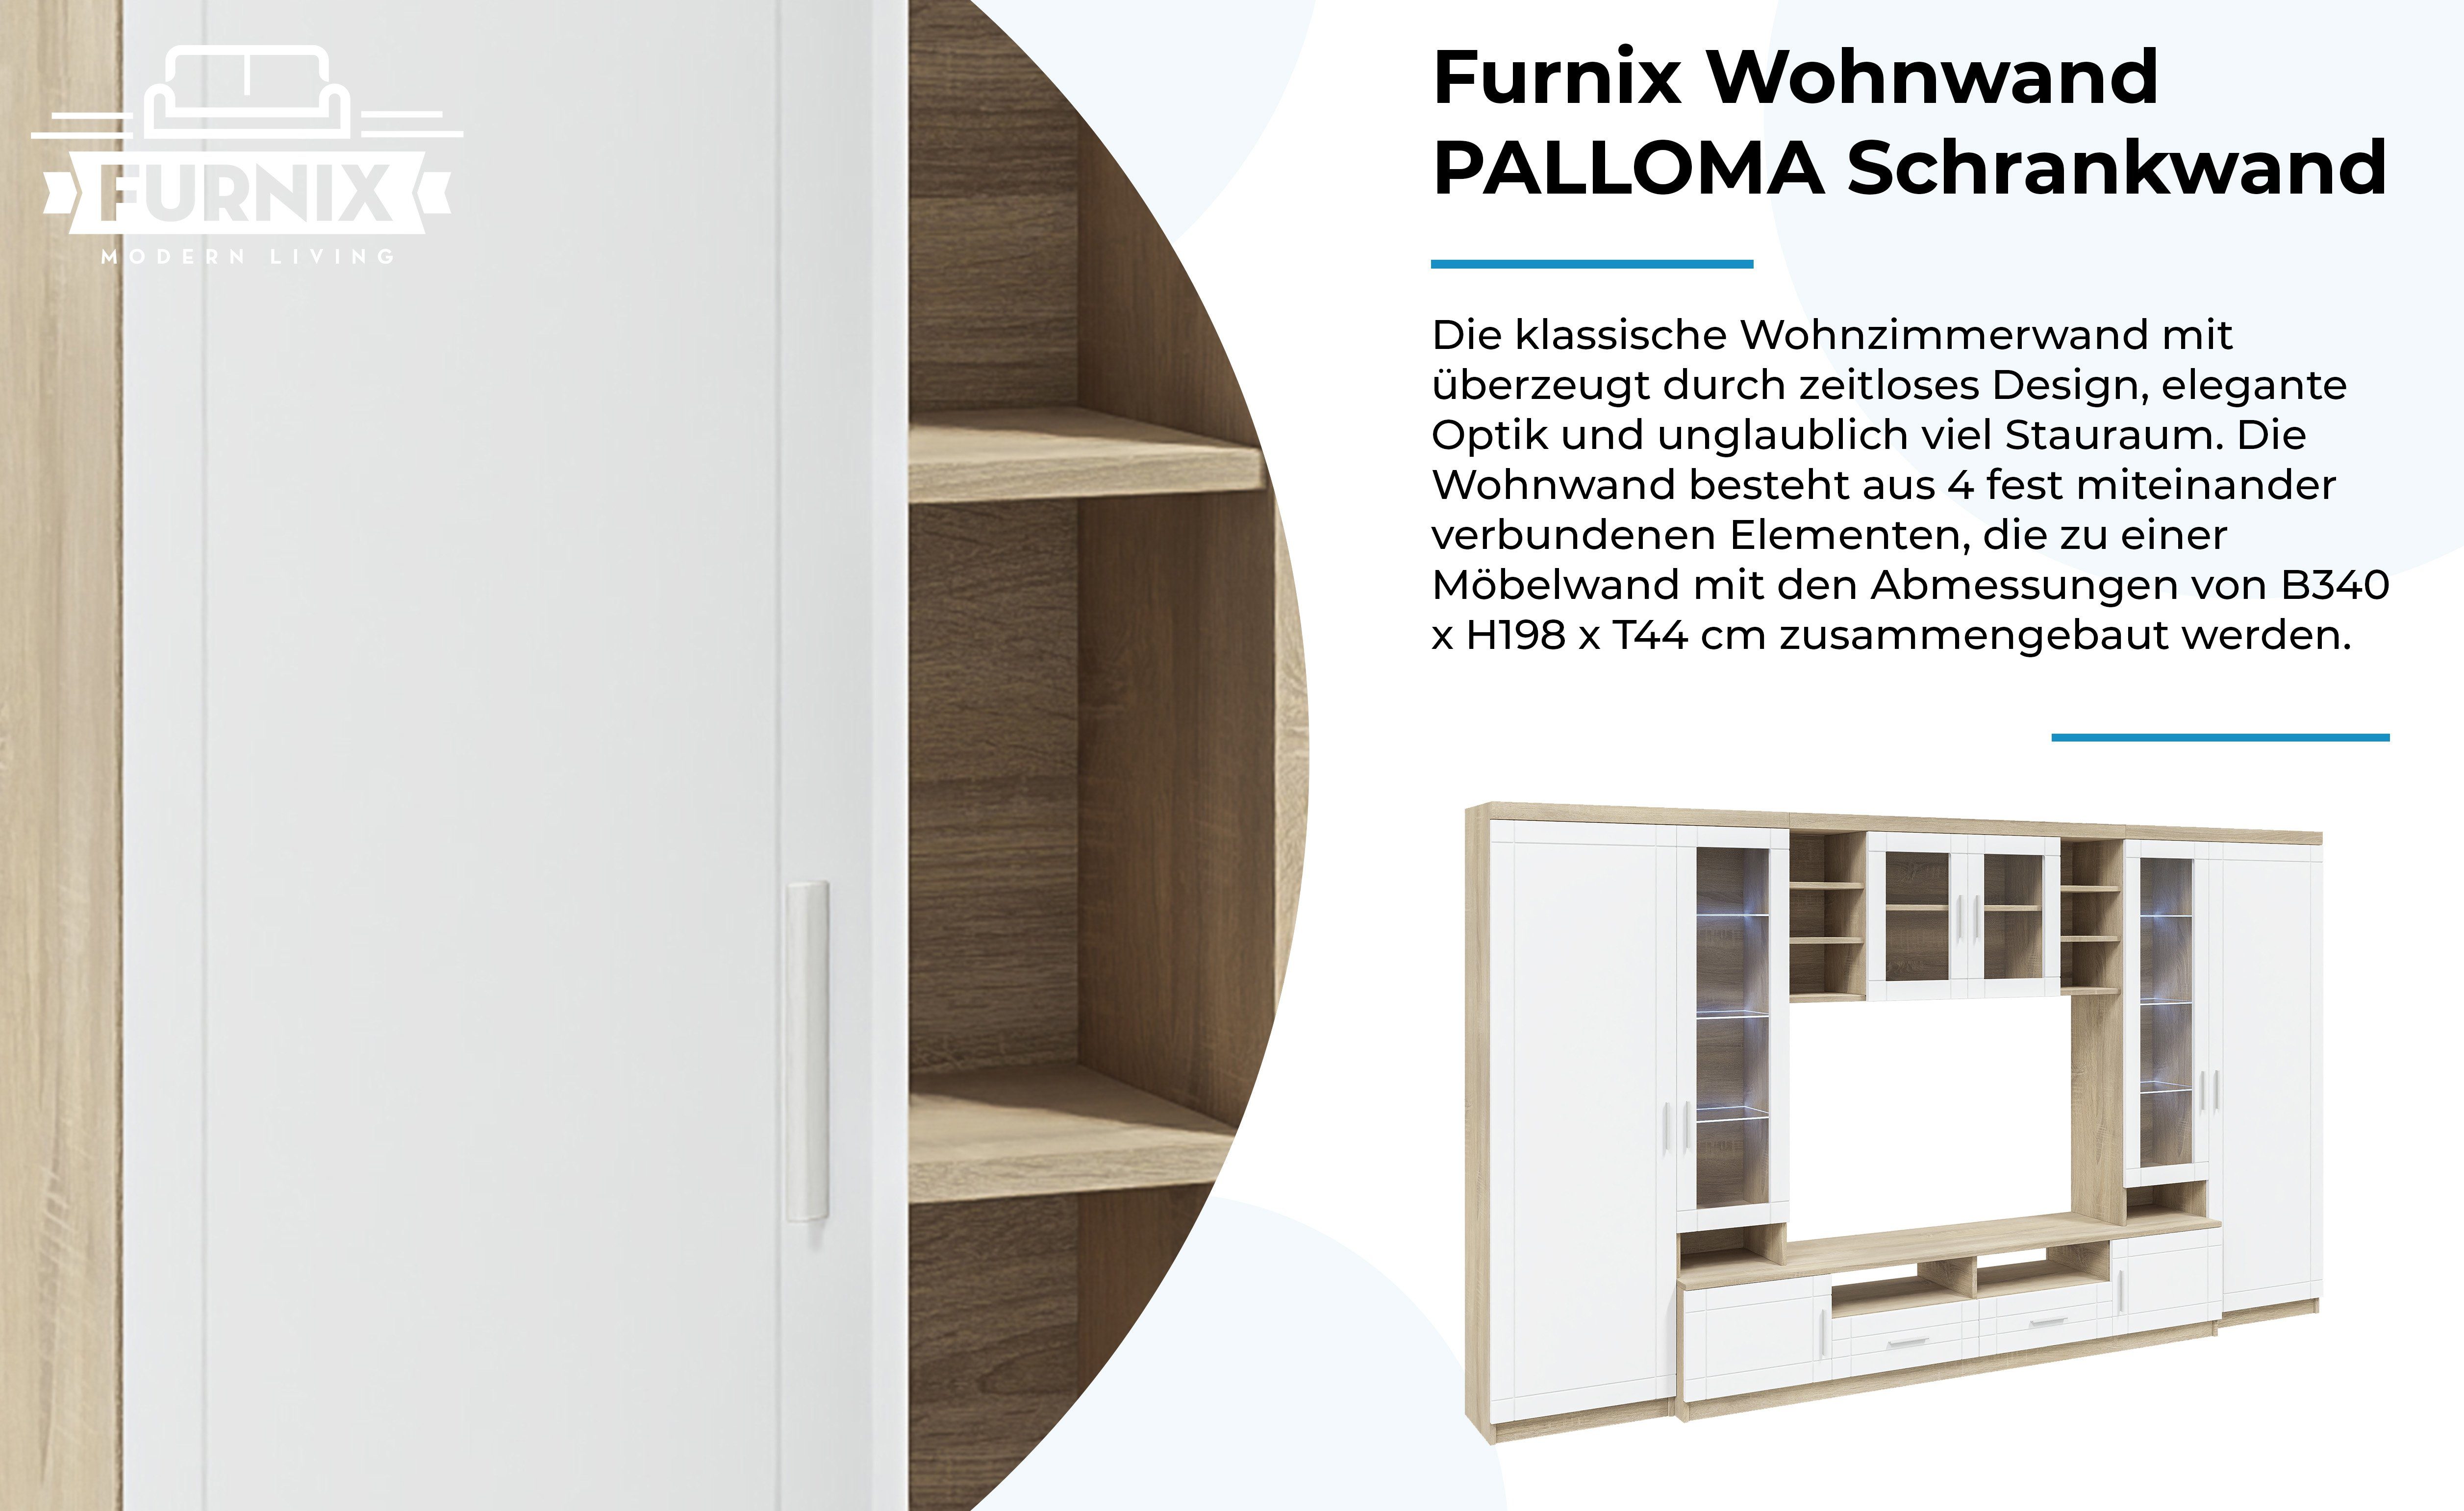 Furnix Wohnwand Hängeschrank, cm / 2 B340 TV-Schrank, x Schrankwand PALLOMA Hochschränke, Weiß T44 Sonoma multifunktionell, H198 x